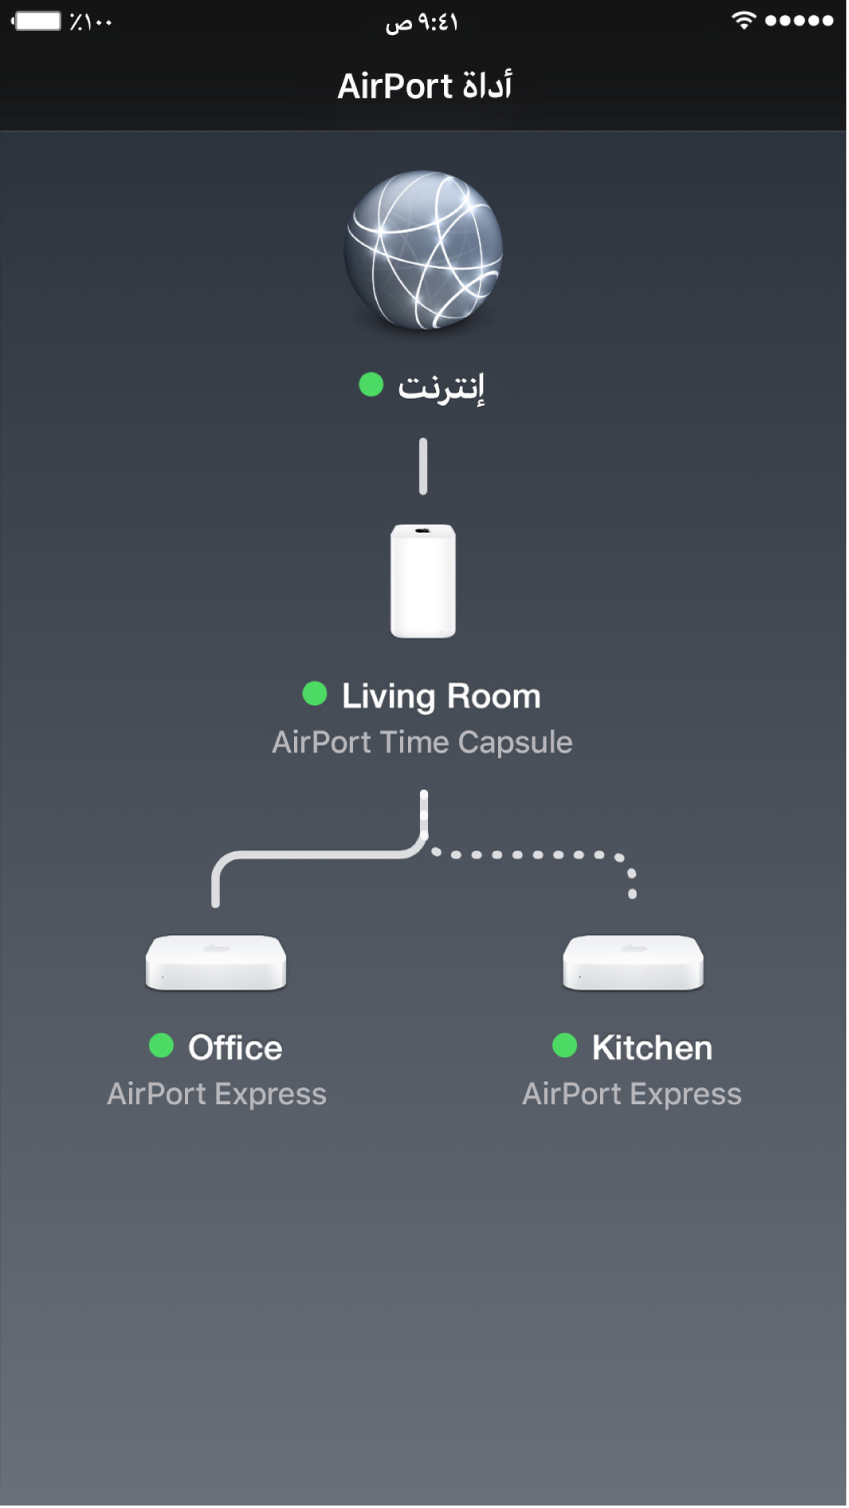 العرض الرسومي العام في أداة AirPort لـ iOS.